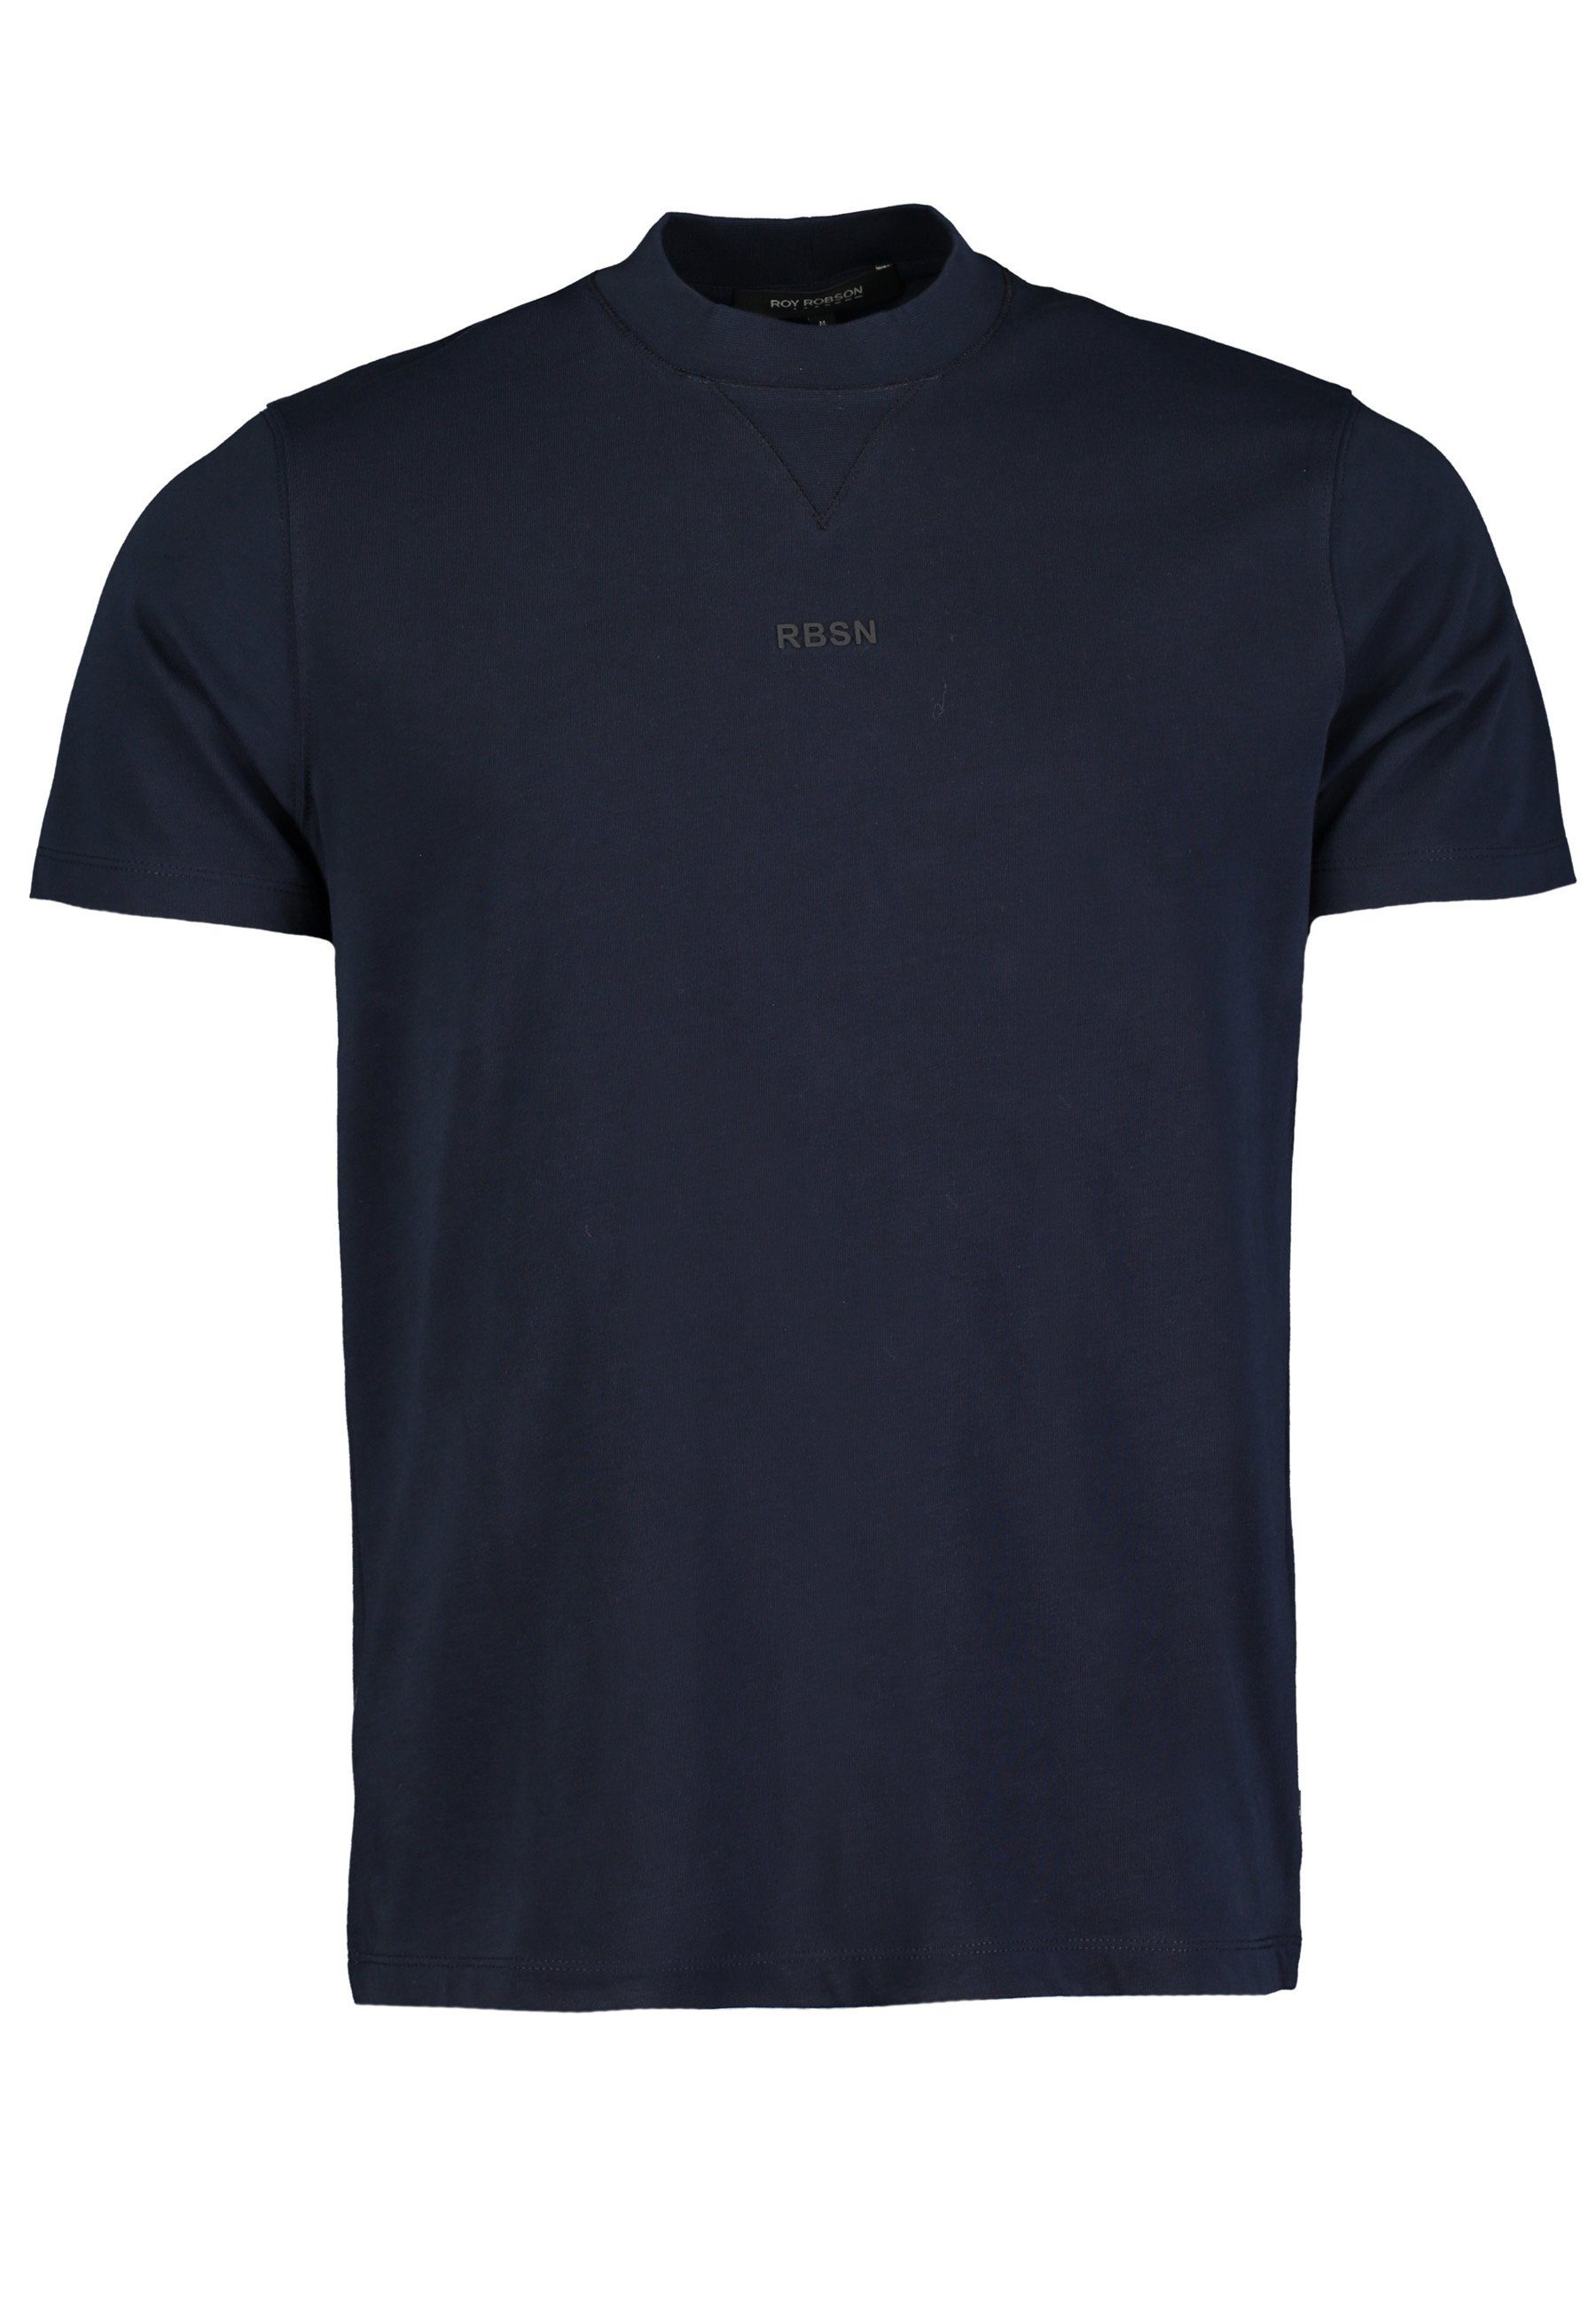 Roy Robson T-Shirt T-Shirt mit dunkelblau Rundhals